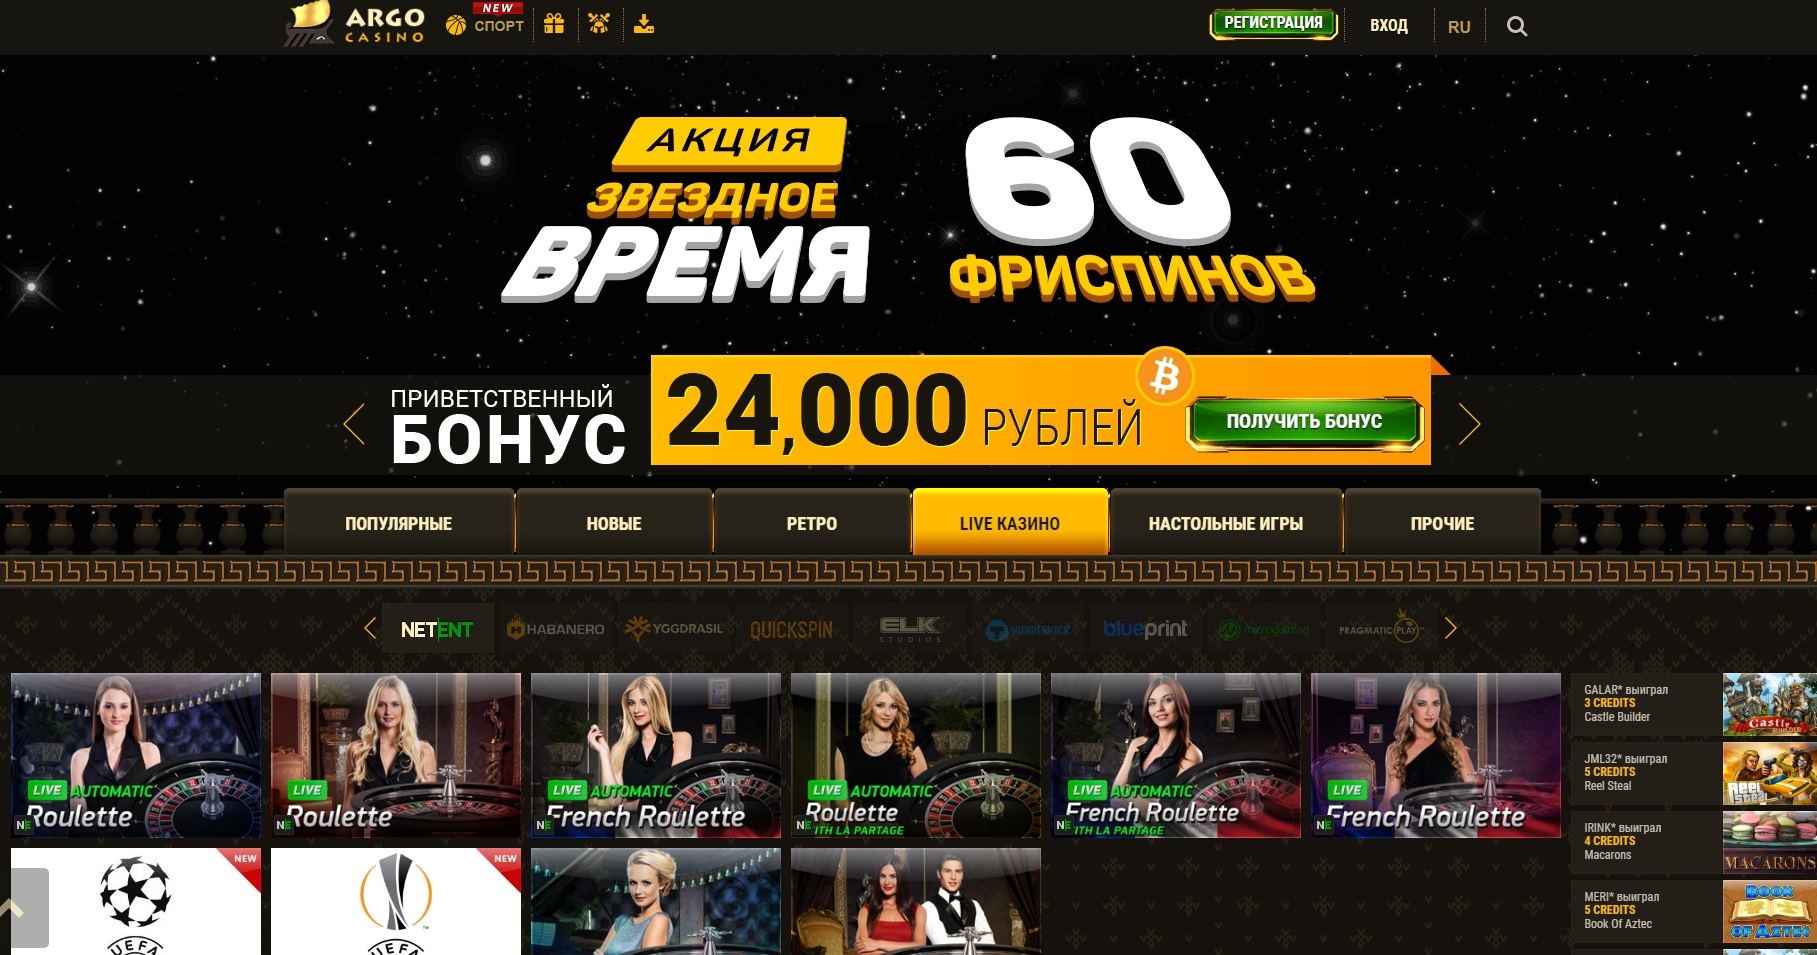 Игровые автоматы бонус за регистрацию 300 рублей без депозита игровые автоматы скачать сборник бесплатно на компьютер